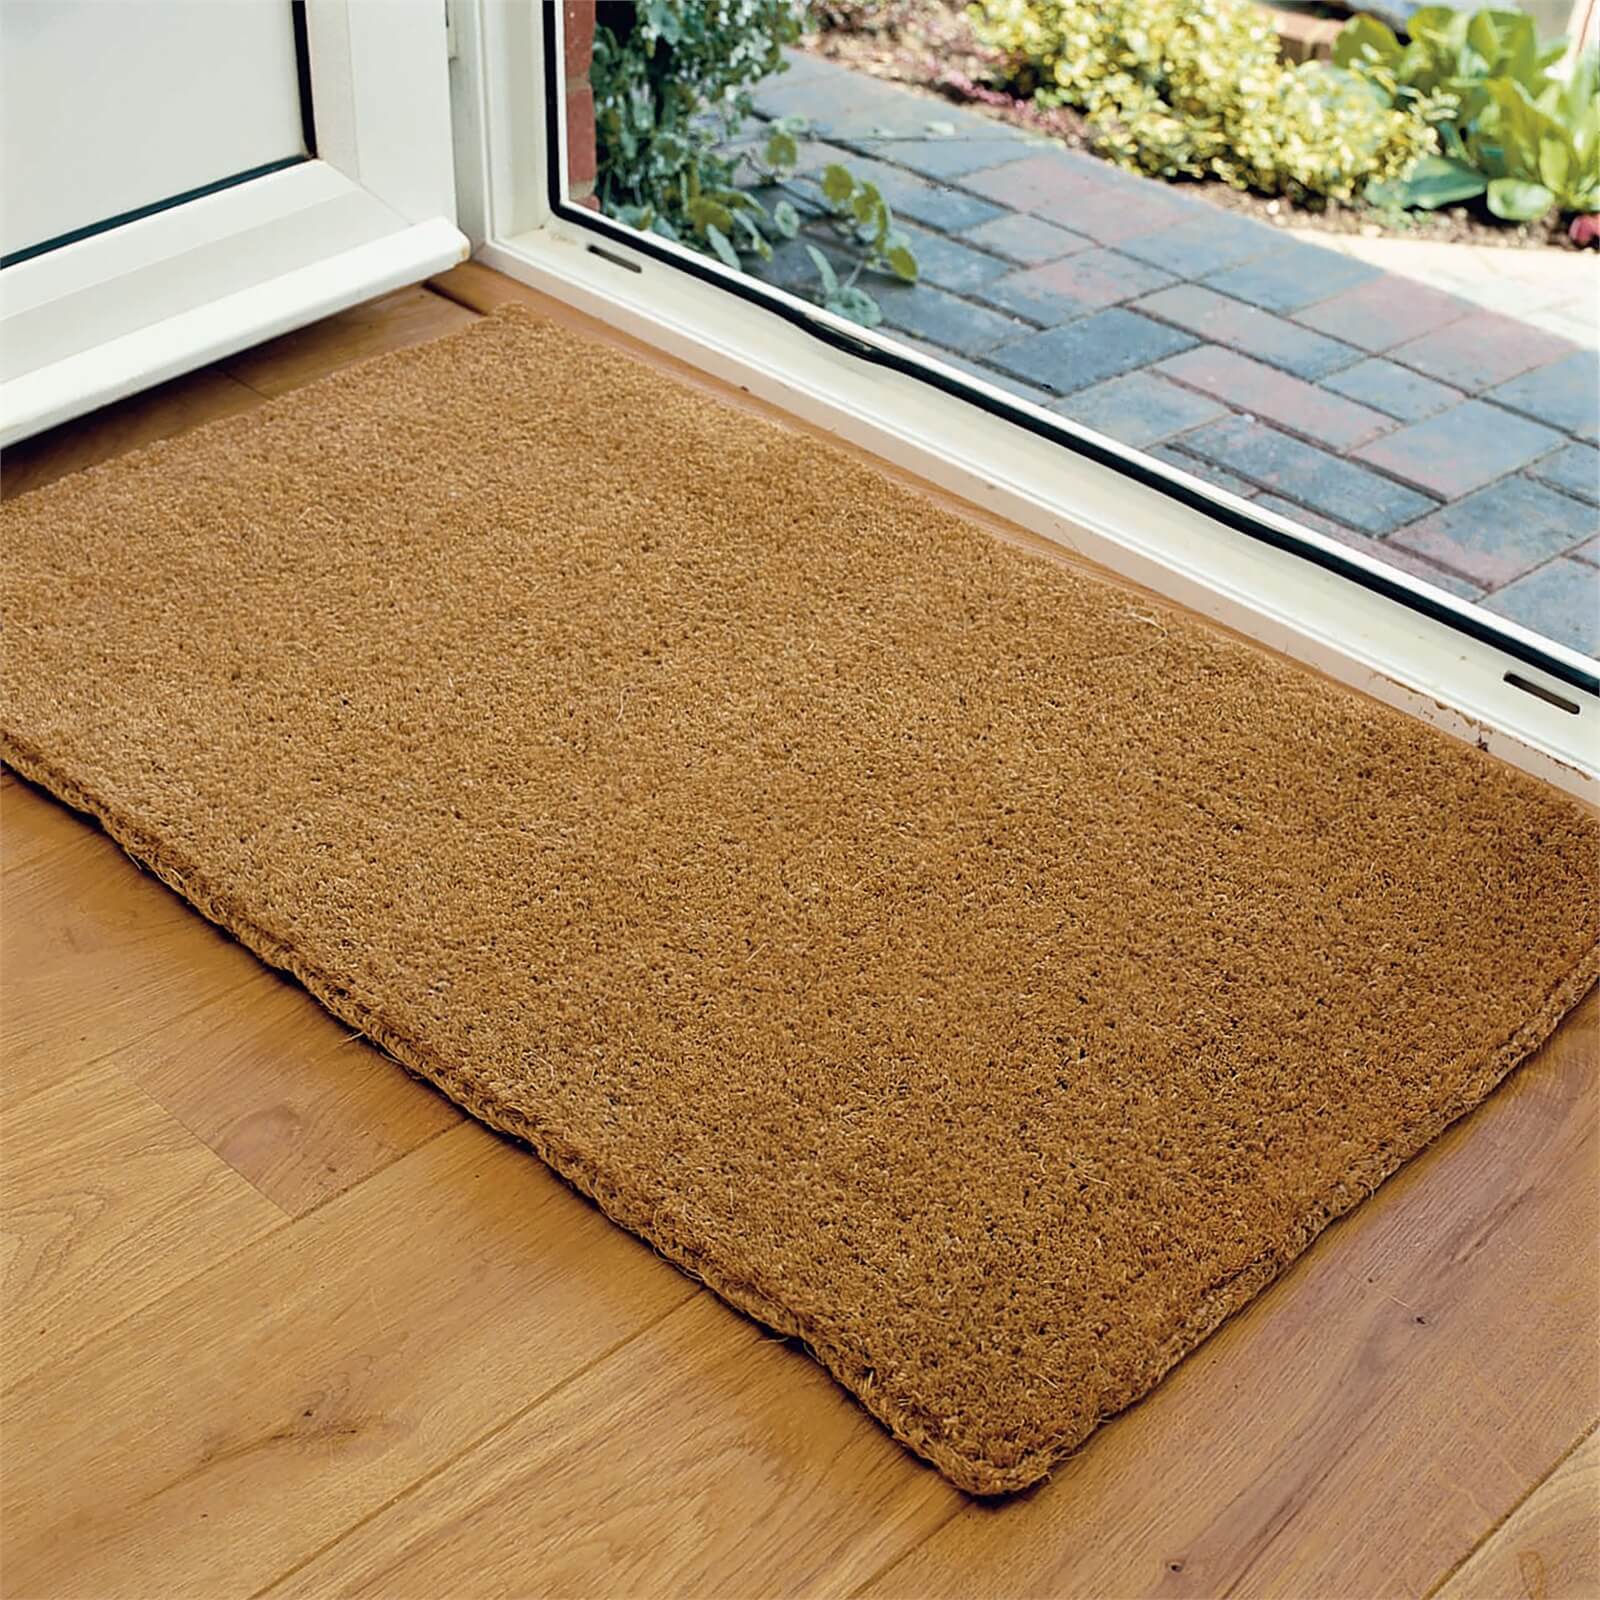 Kala Natural Coir Doormat